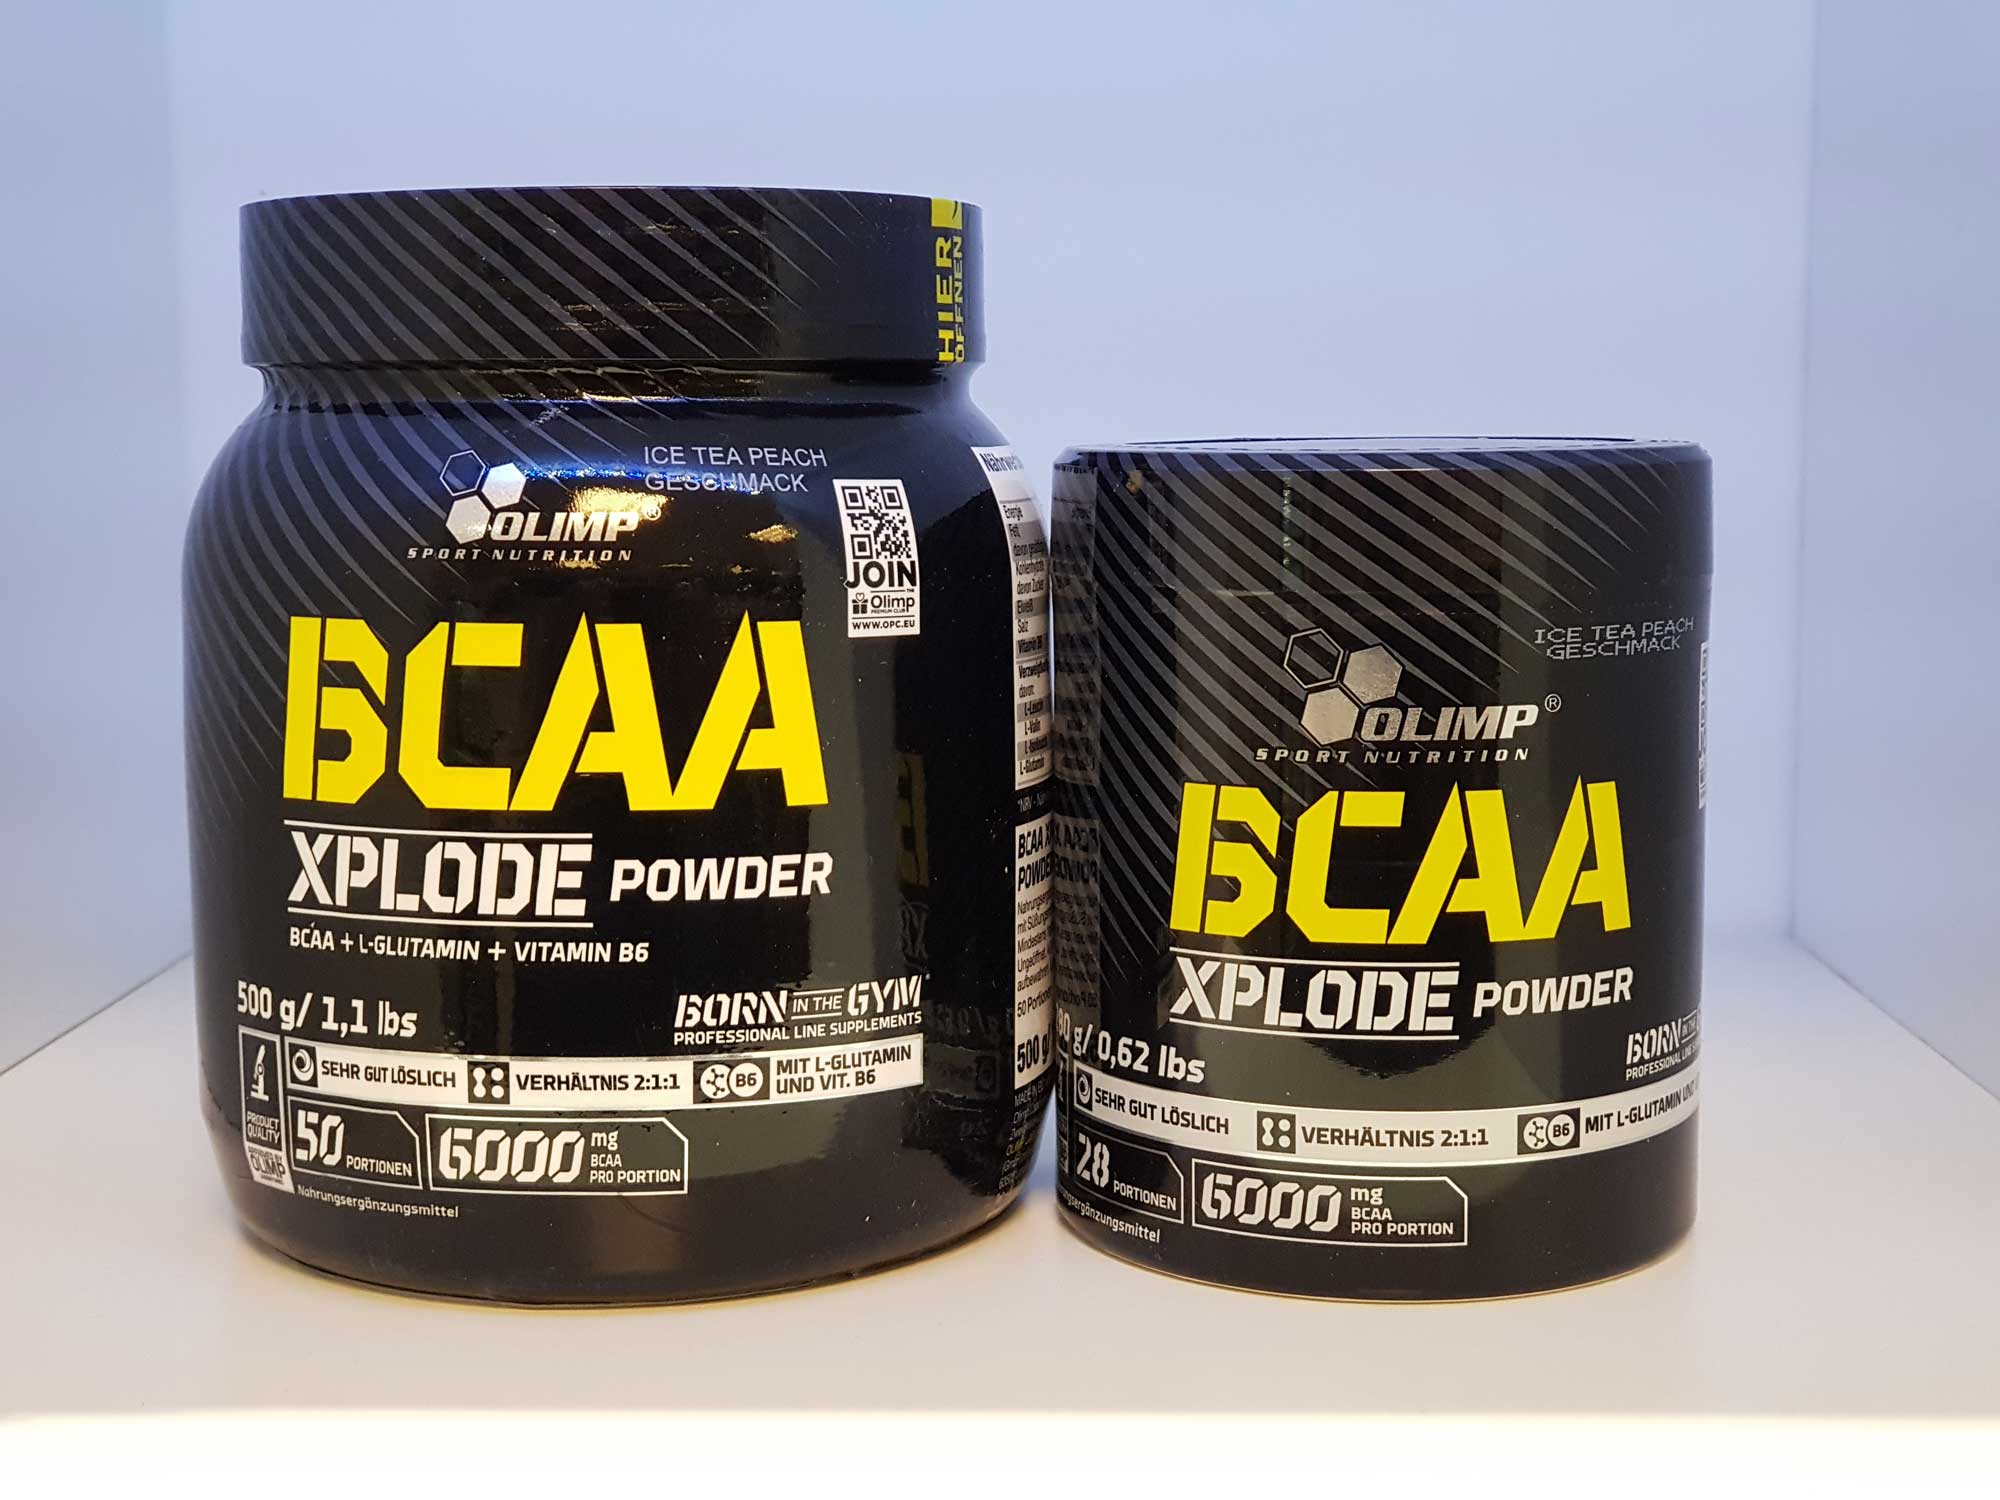 Обзор bcaa 5000 в порошке (powder) от компании optimum nutrition. изучаем состав и инструкцию по применению, а также отрицательные и положительные отзывы потребителей